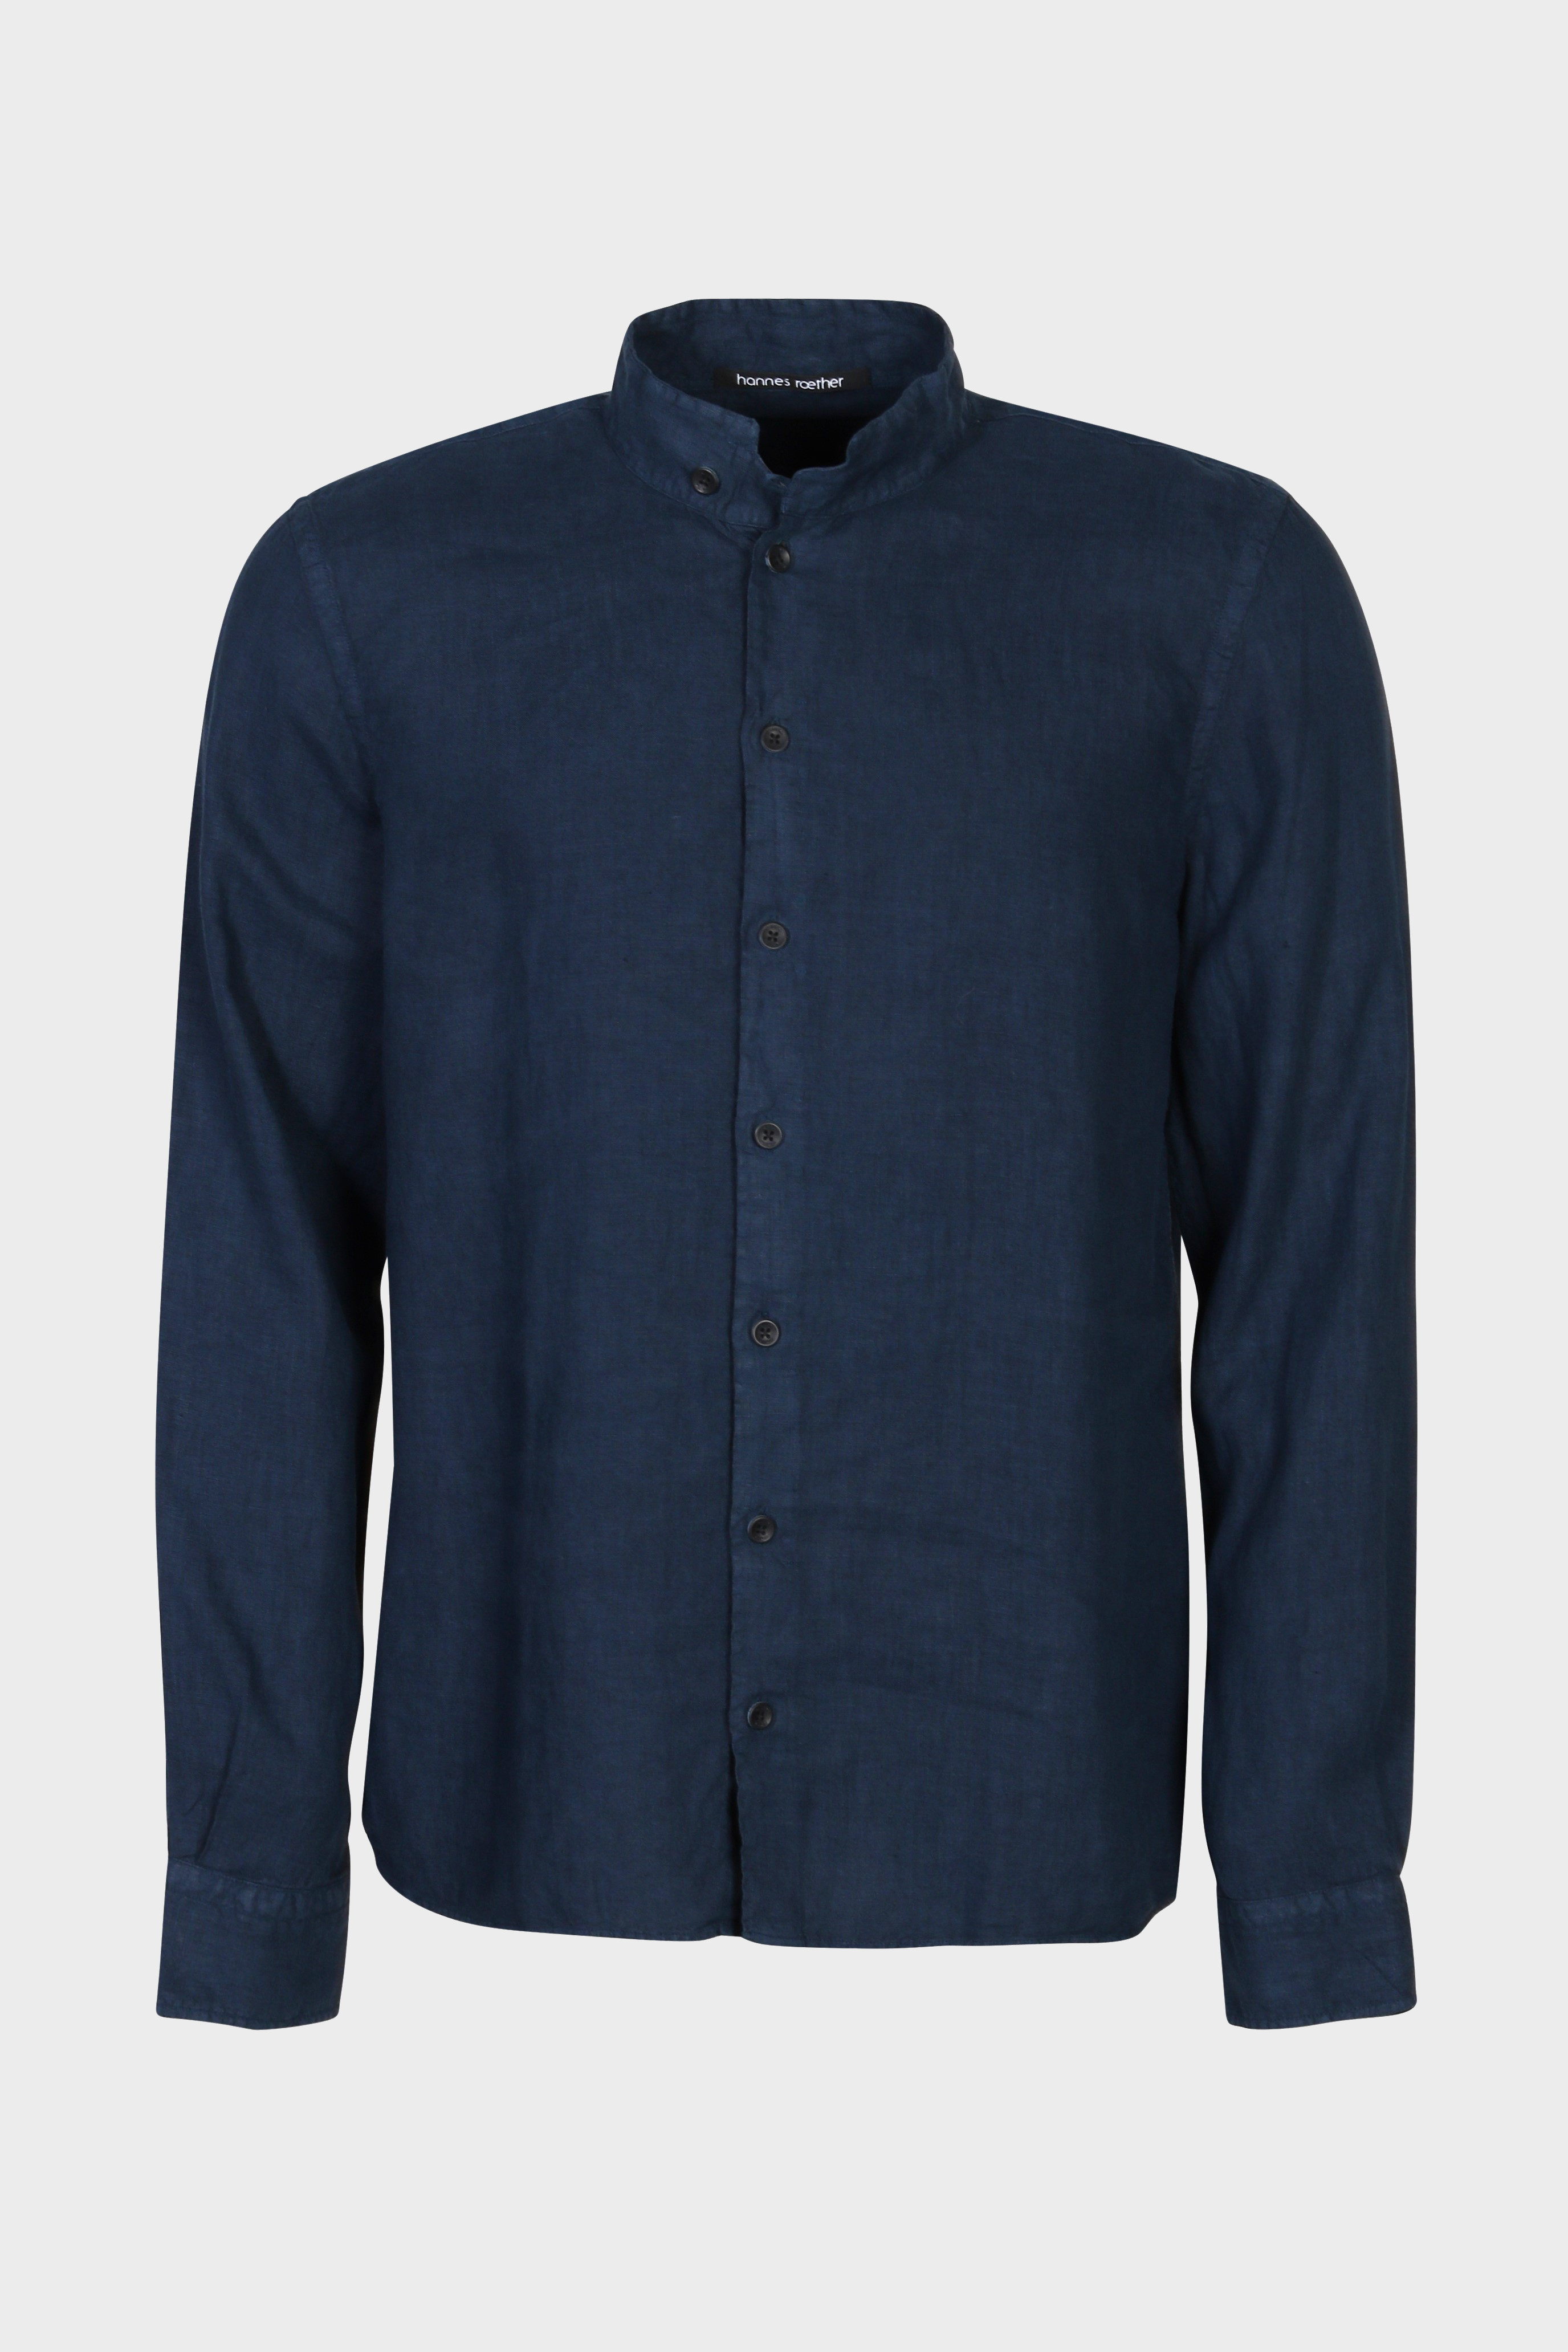 HANNES ROETHER Linen Shirt in Dark Blue M